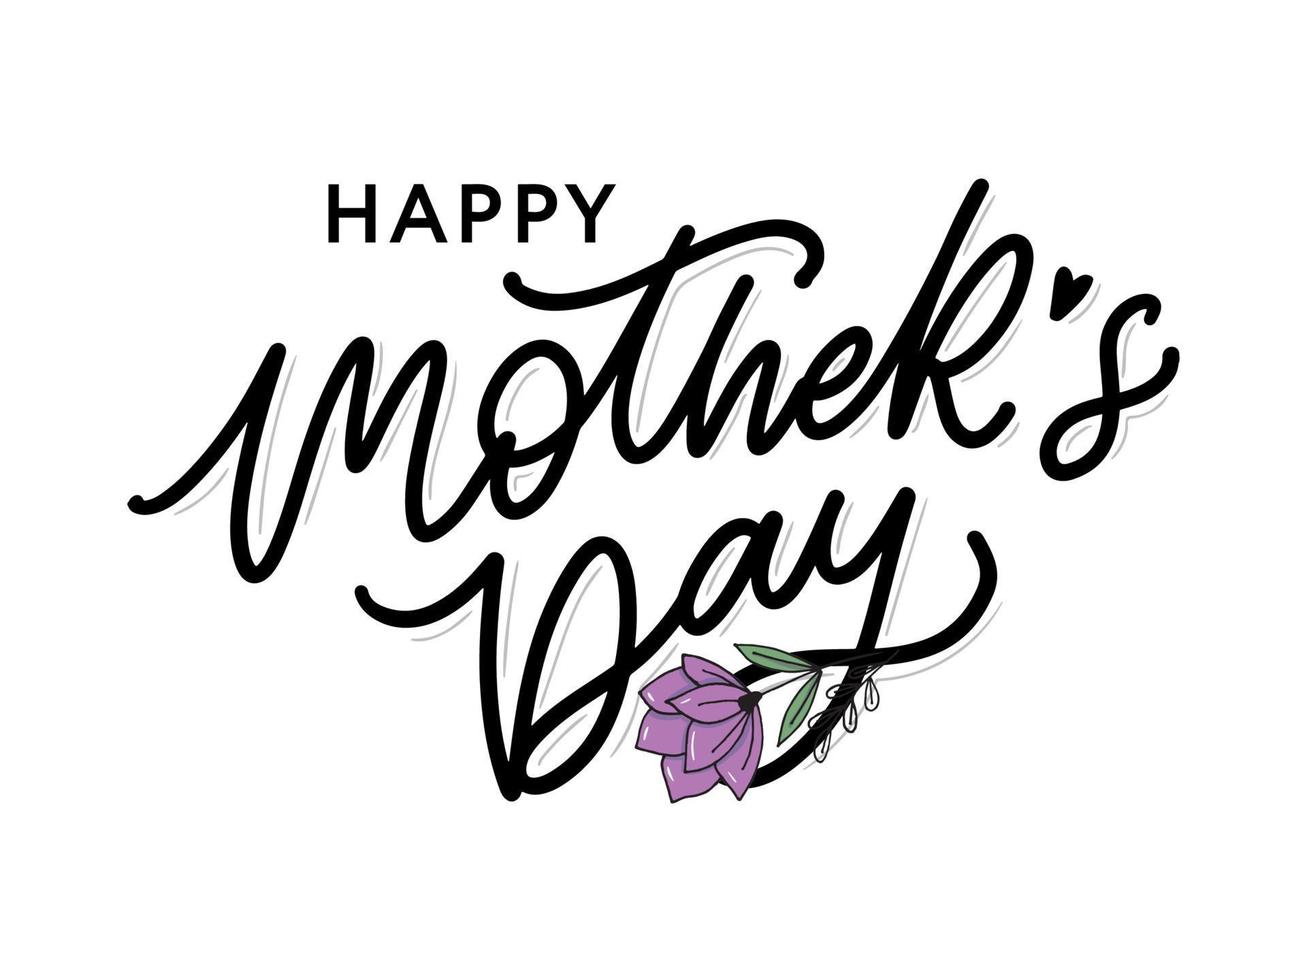 fundo de banner de cartão de caligrafia feliz dia das mães vetor